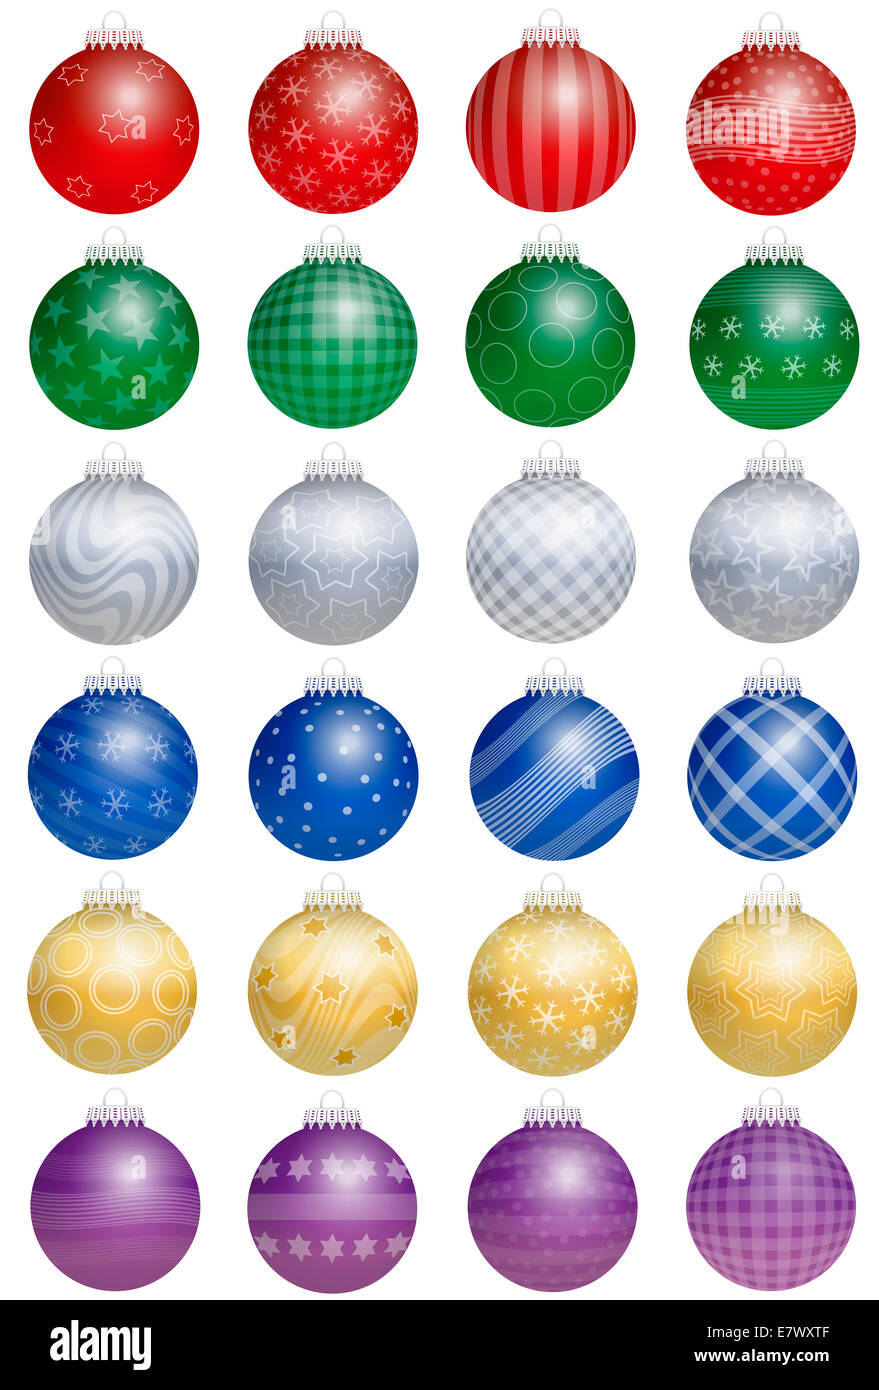 Veinticuatro brillante colorido árbol de navidad bolas - una especie de calendario de adviento - con diferentes adornos. Foto de stock